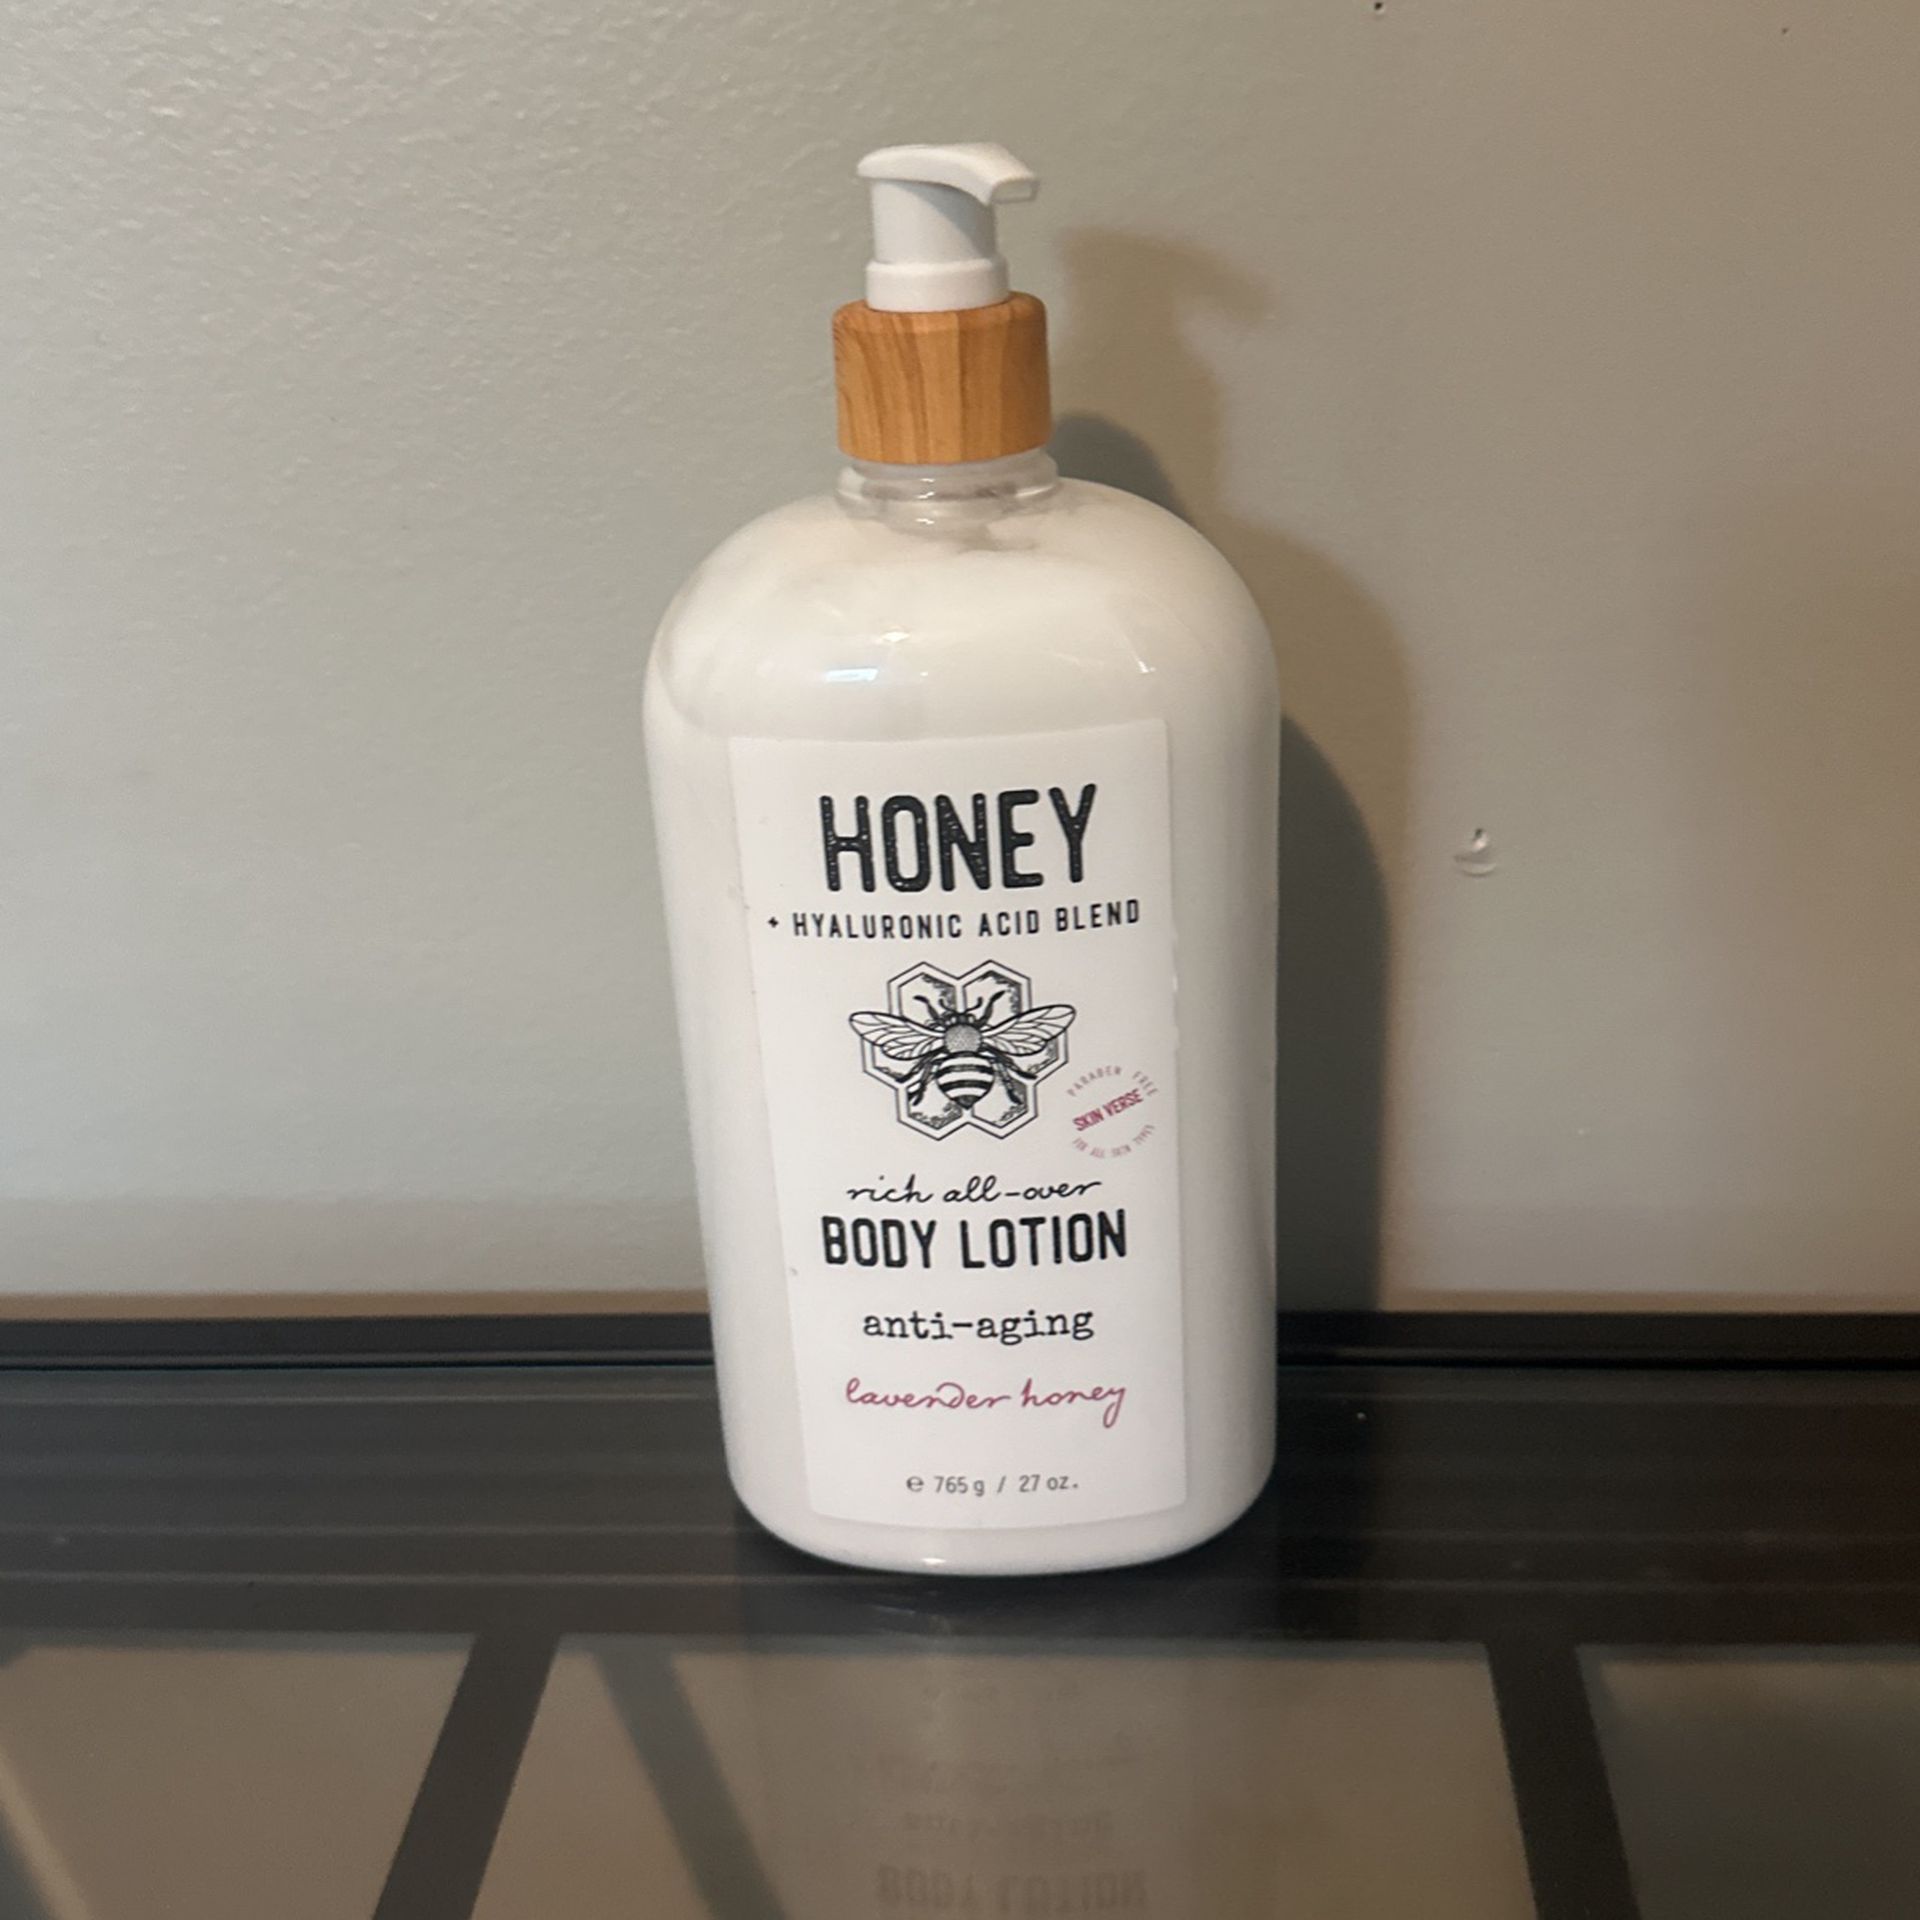 Honey Hyaluronic Acid Blend Body Lotion 